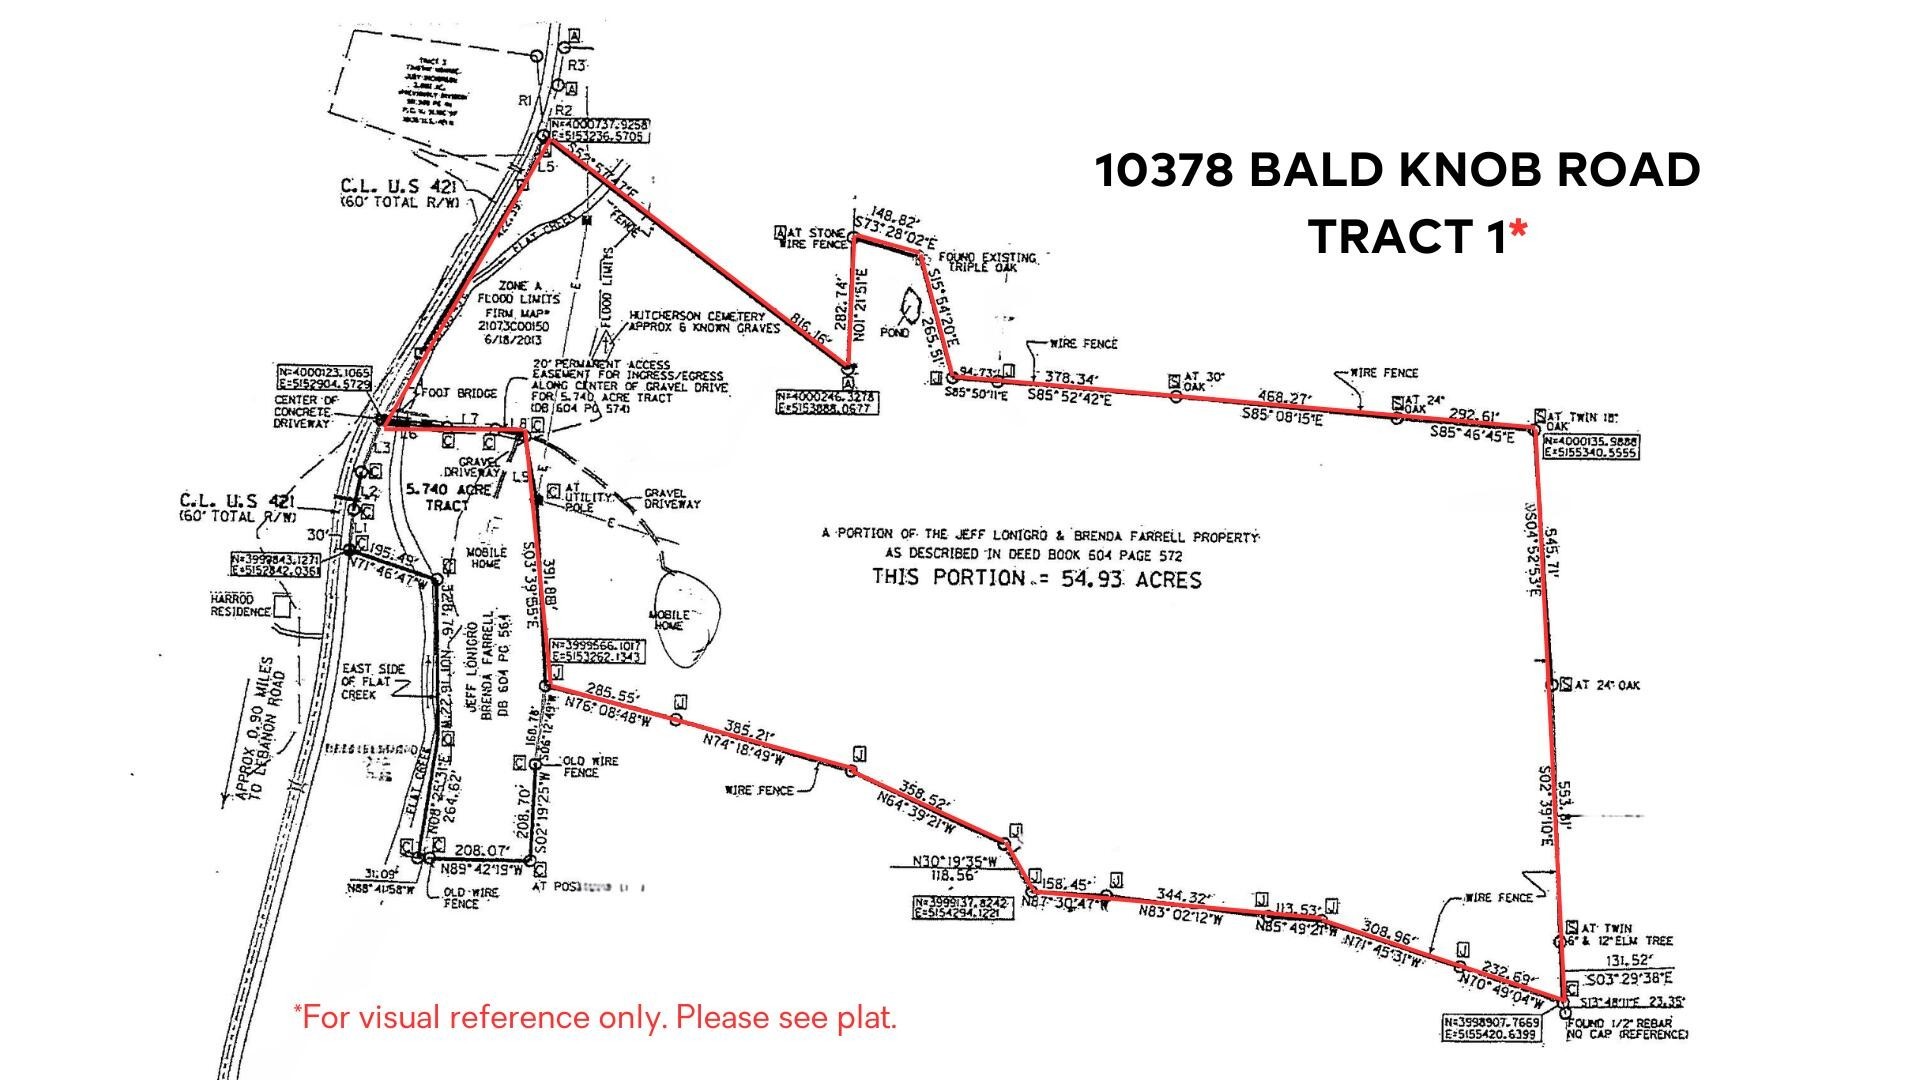 17. 10378 Bald Knob Road